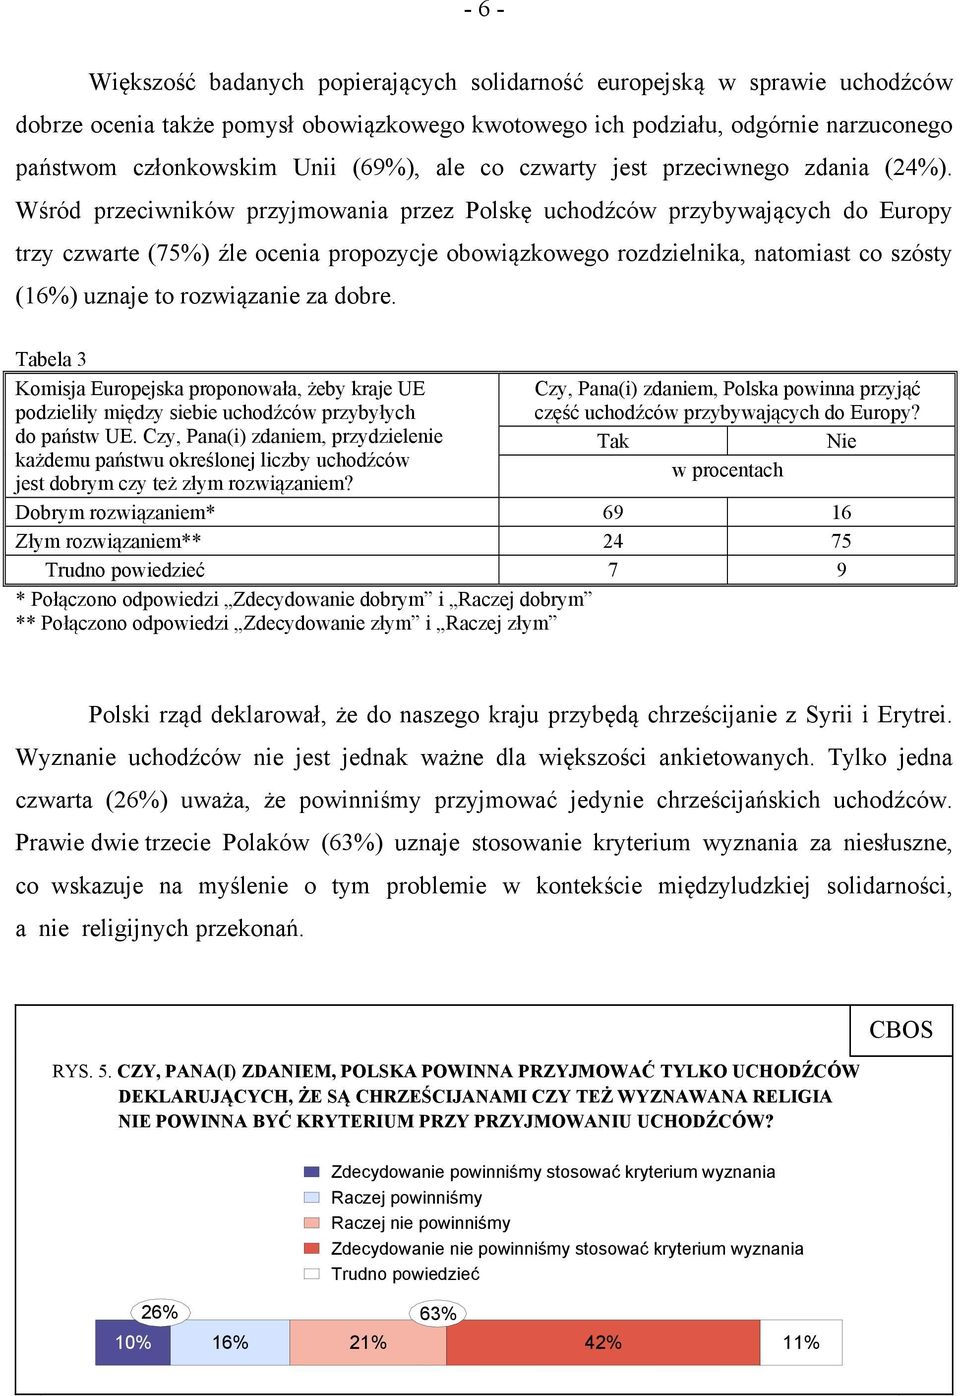 Wśród przeciwników przyjmowania przez Polskę uchodźców przybywających do Europy trzy czwarte (75%) źle ocenia propozycje obowiązkowego rozdzielnika, natomiast co szósty (16%) uznaje to rozwiązanie za